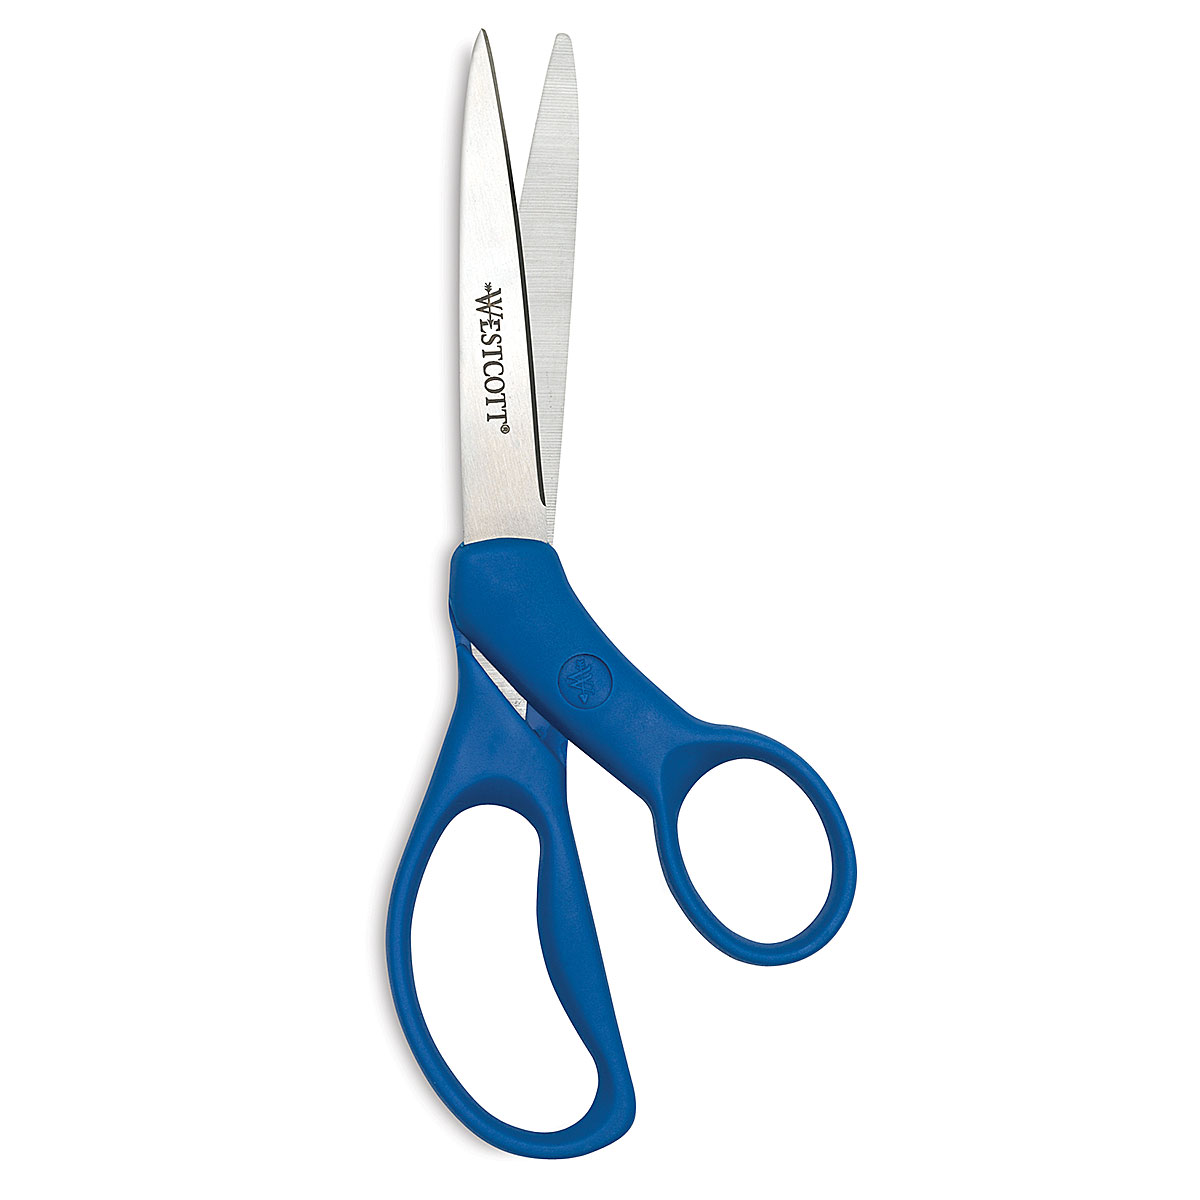 Westcott - Westcott 7 All Purpose Preferred Stainless Steel Scissors, Blue  (43217)